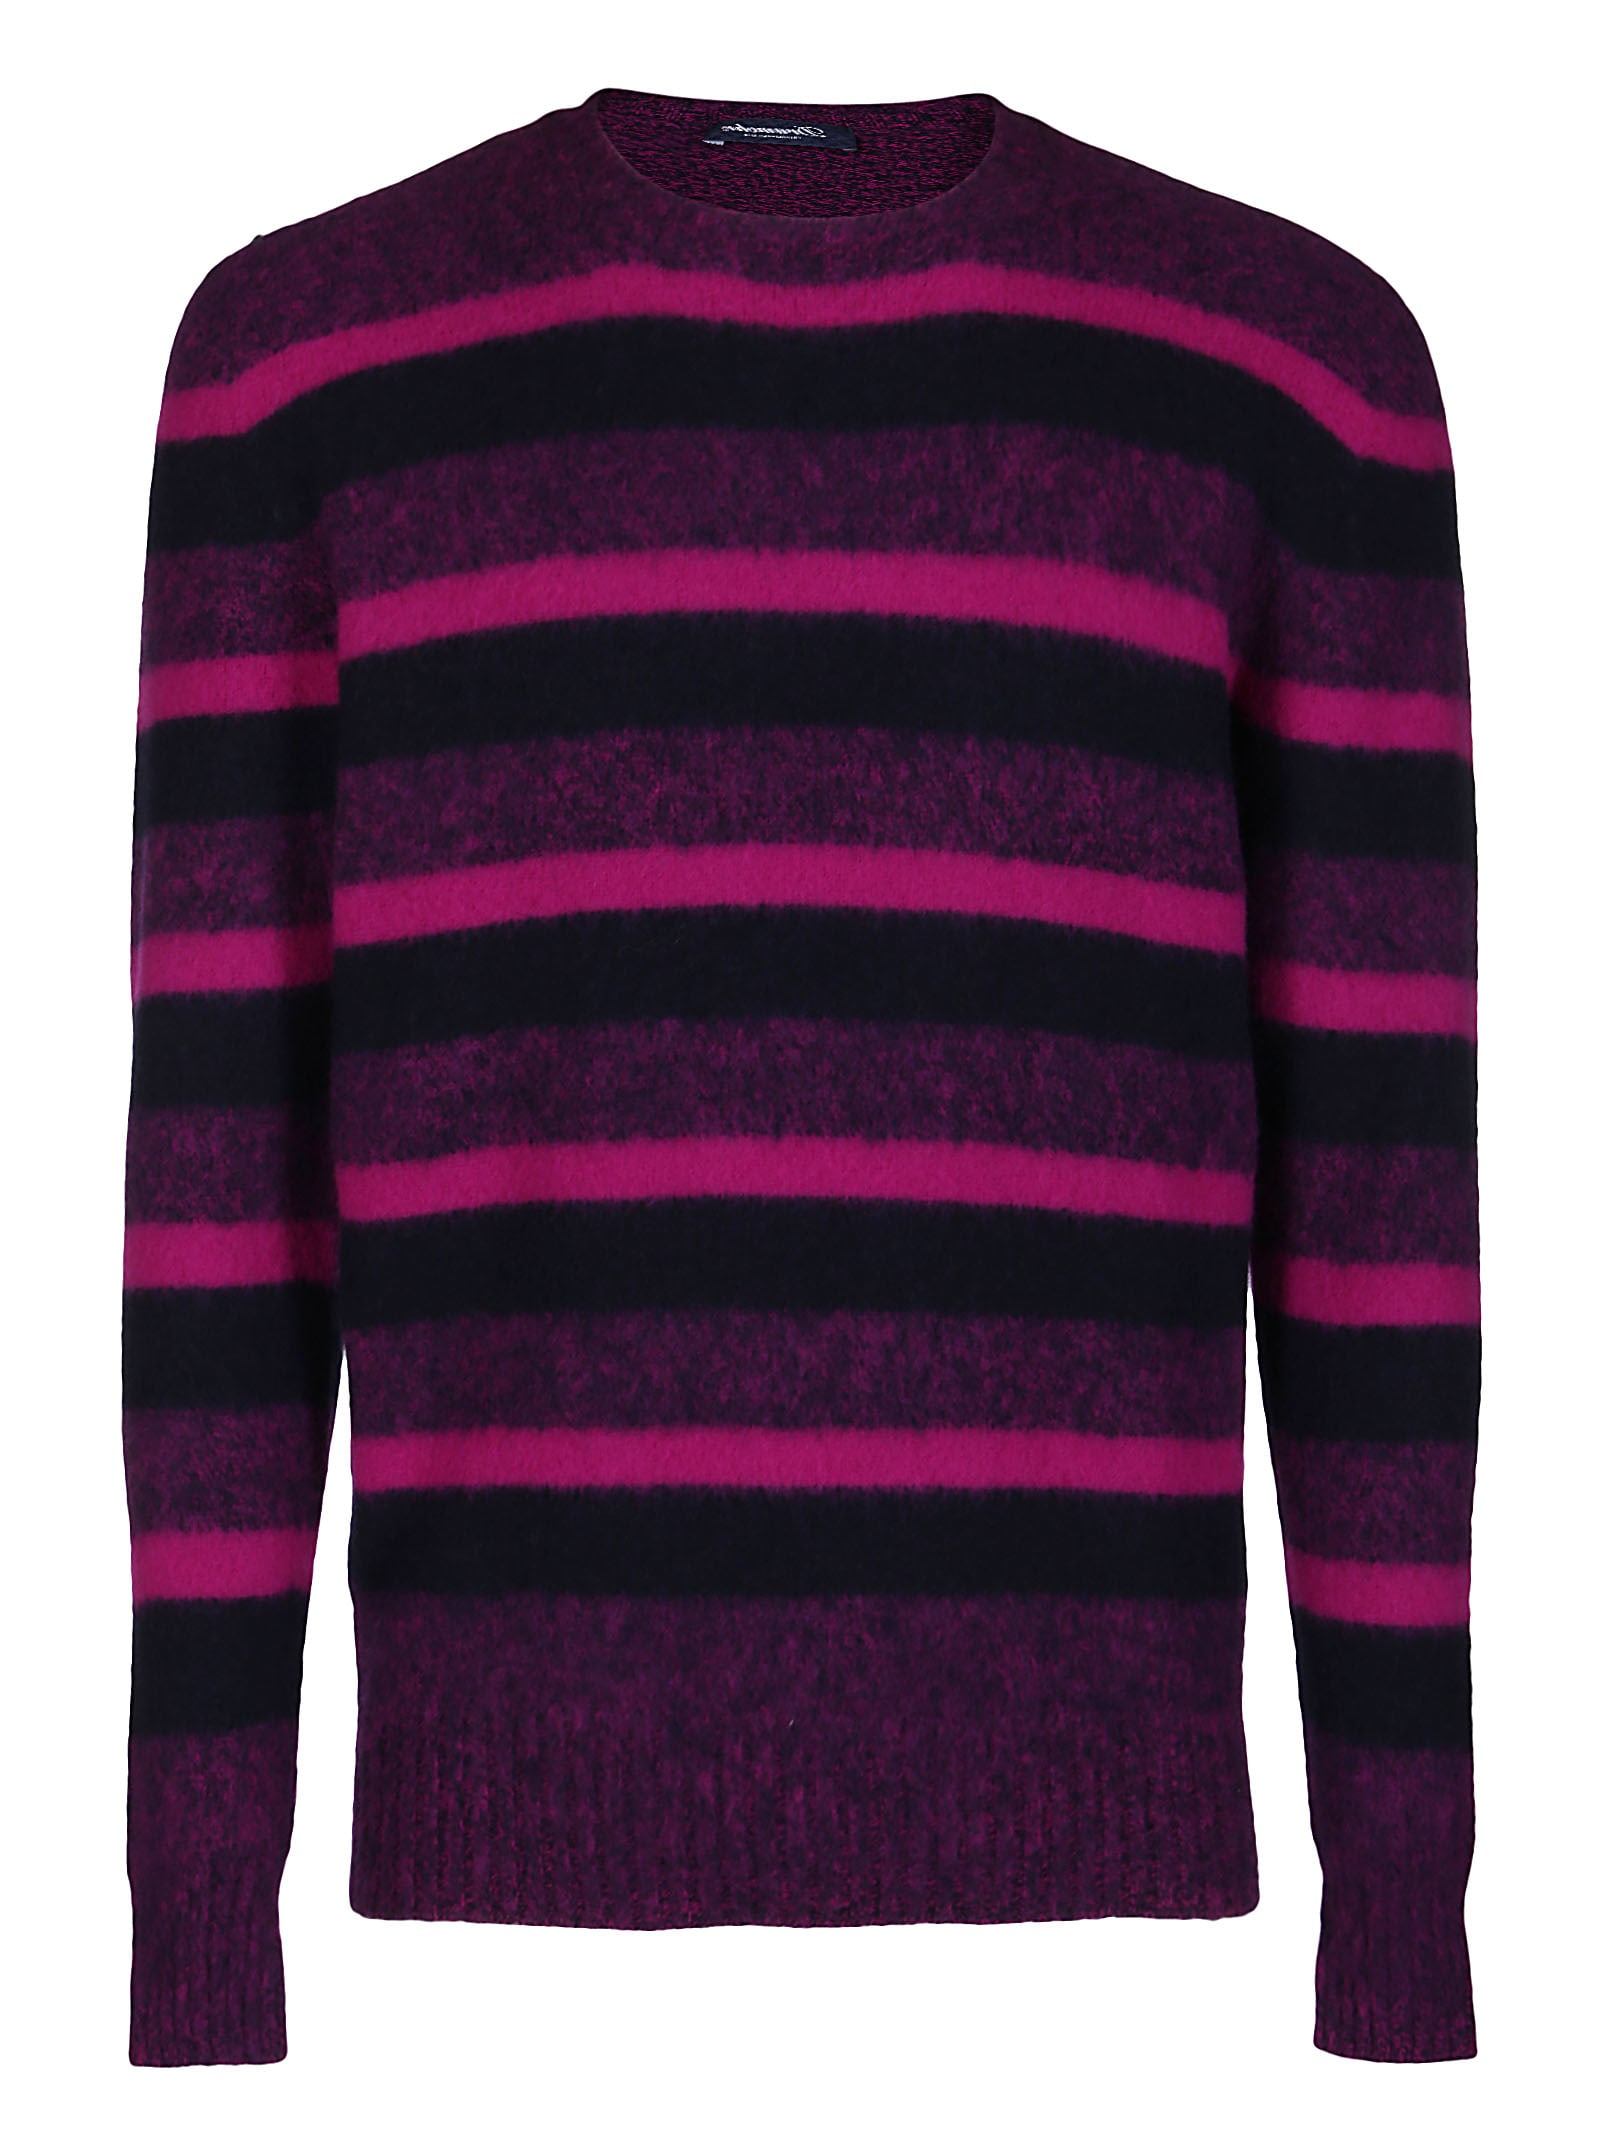 purple wool jumper